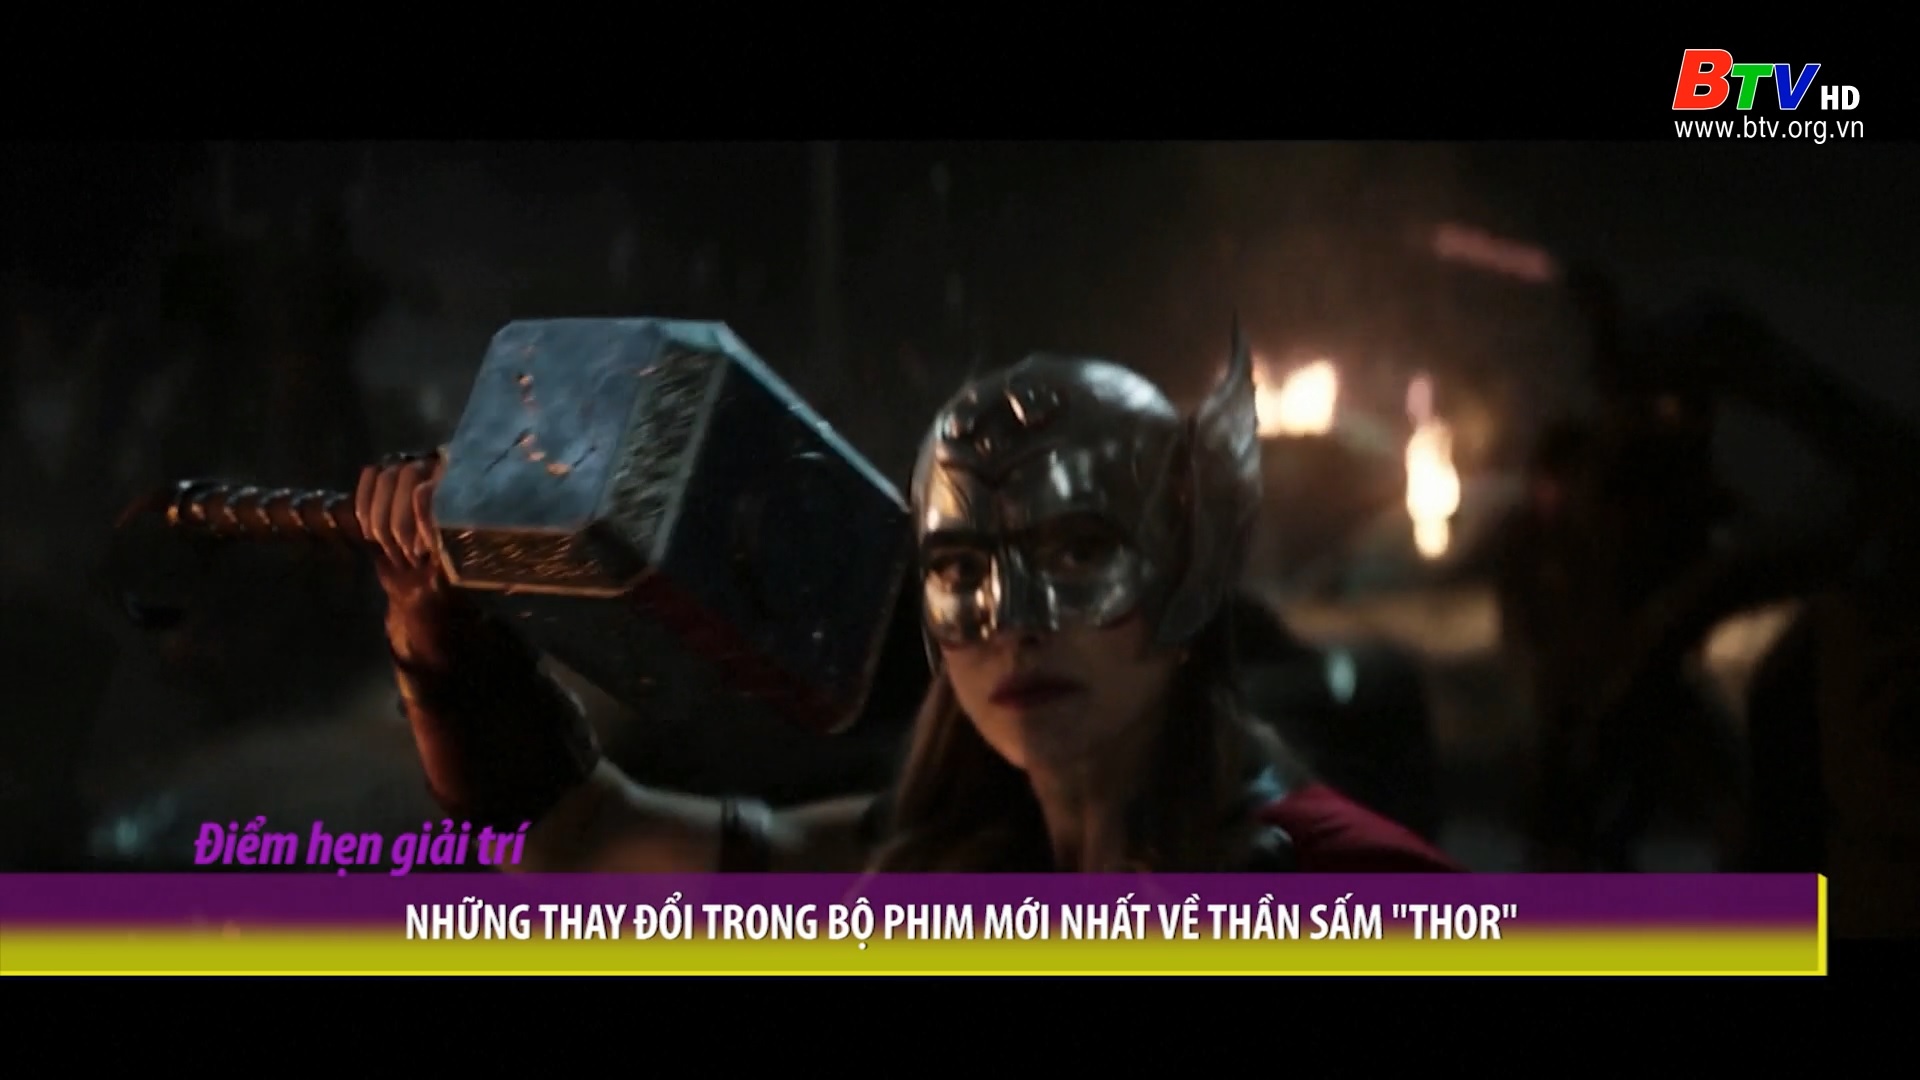 Những thay đổi trong bộ phim mới nhất về thần sấm “Thor”